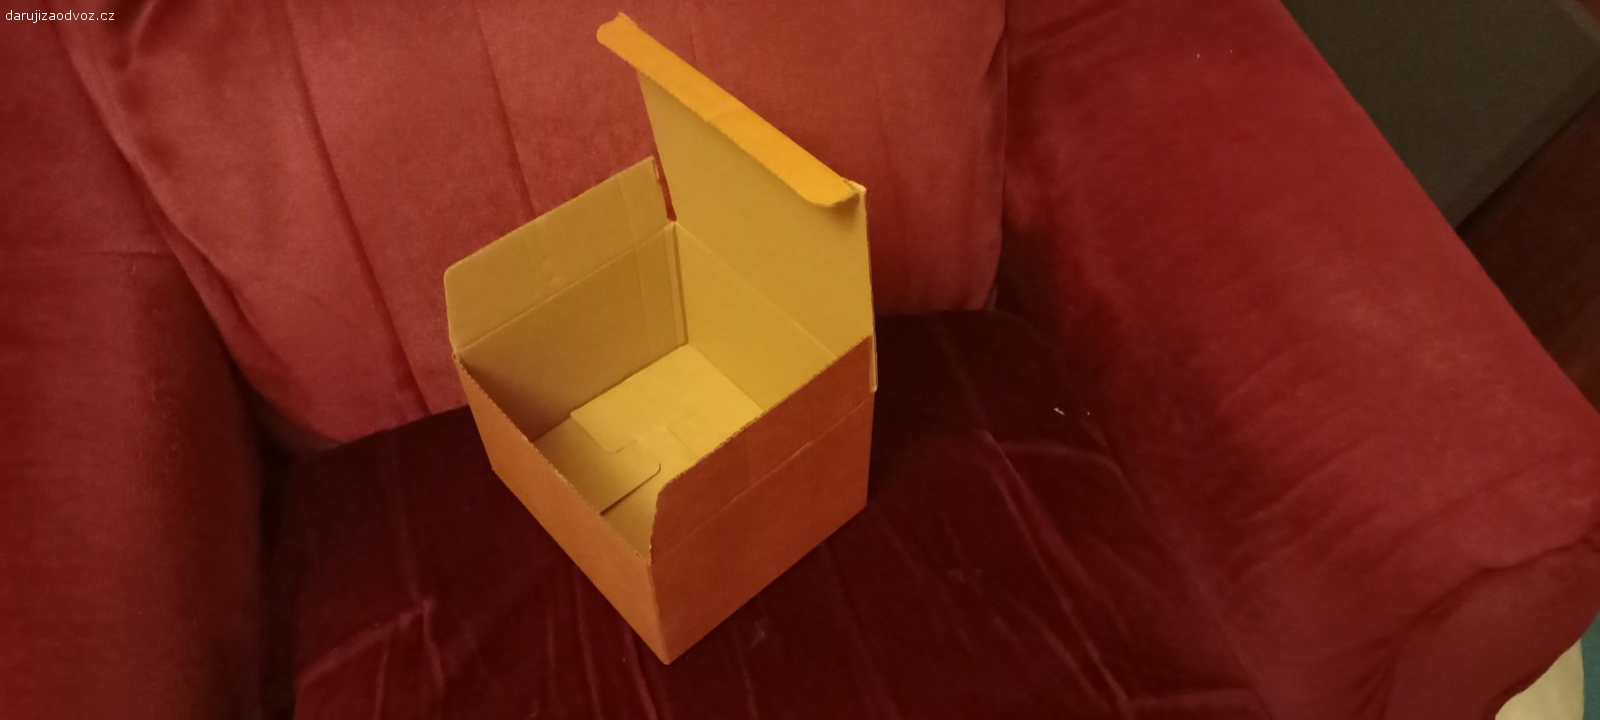 krabičky papírové. Krabičky 17 x 15 X10
Krabičky 33x24x10cm